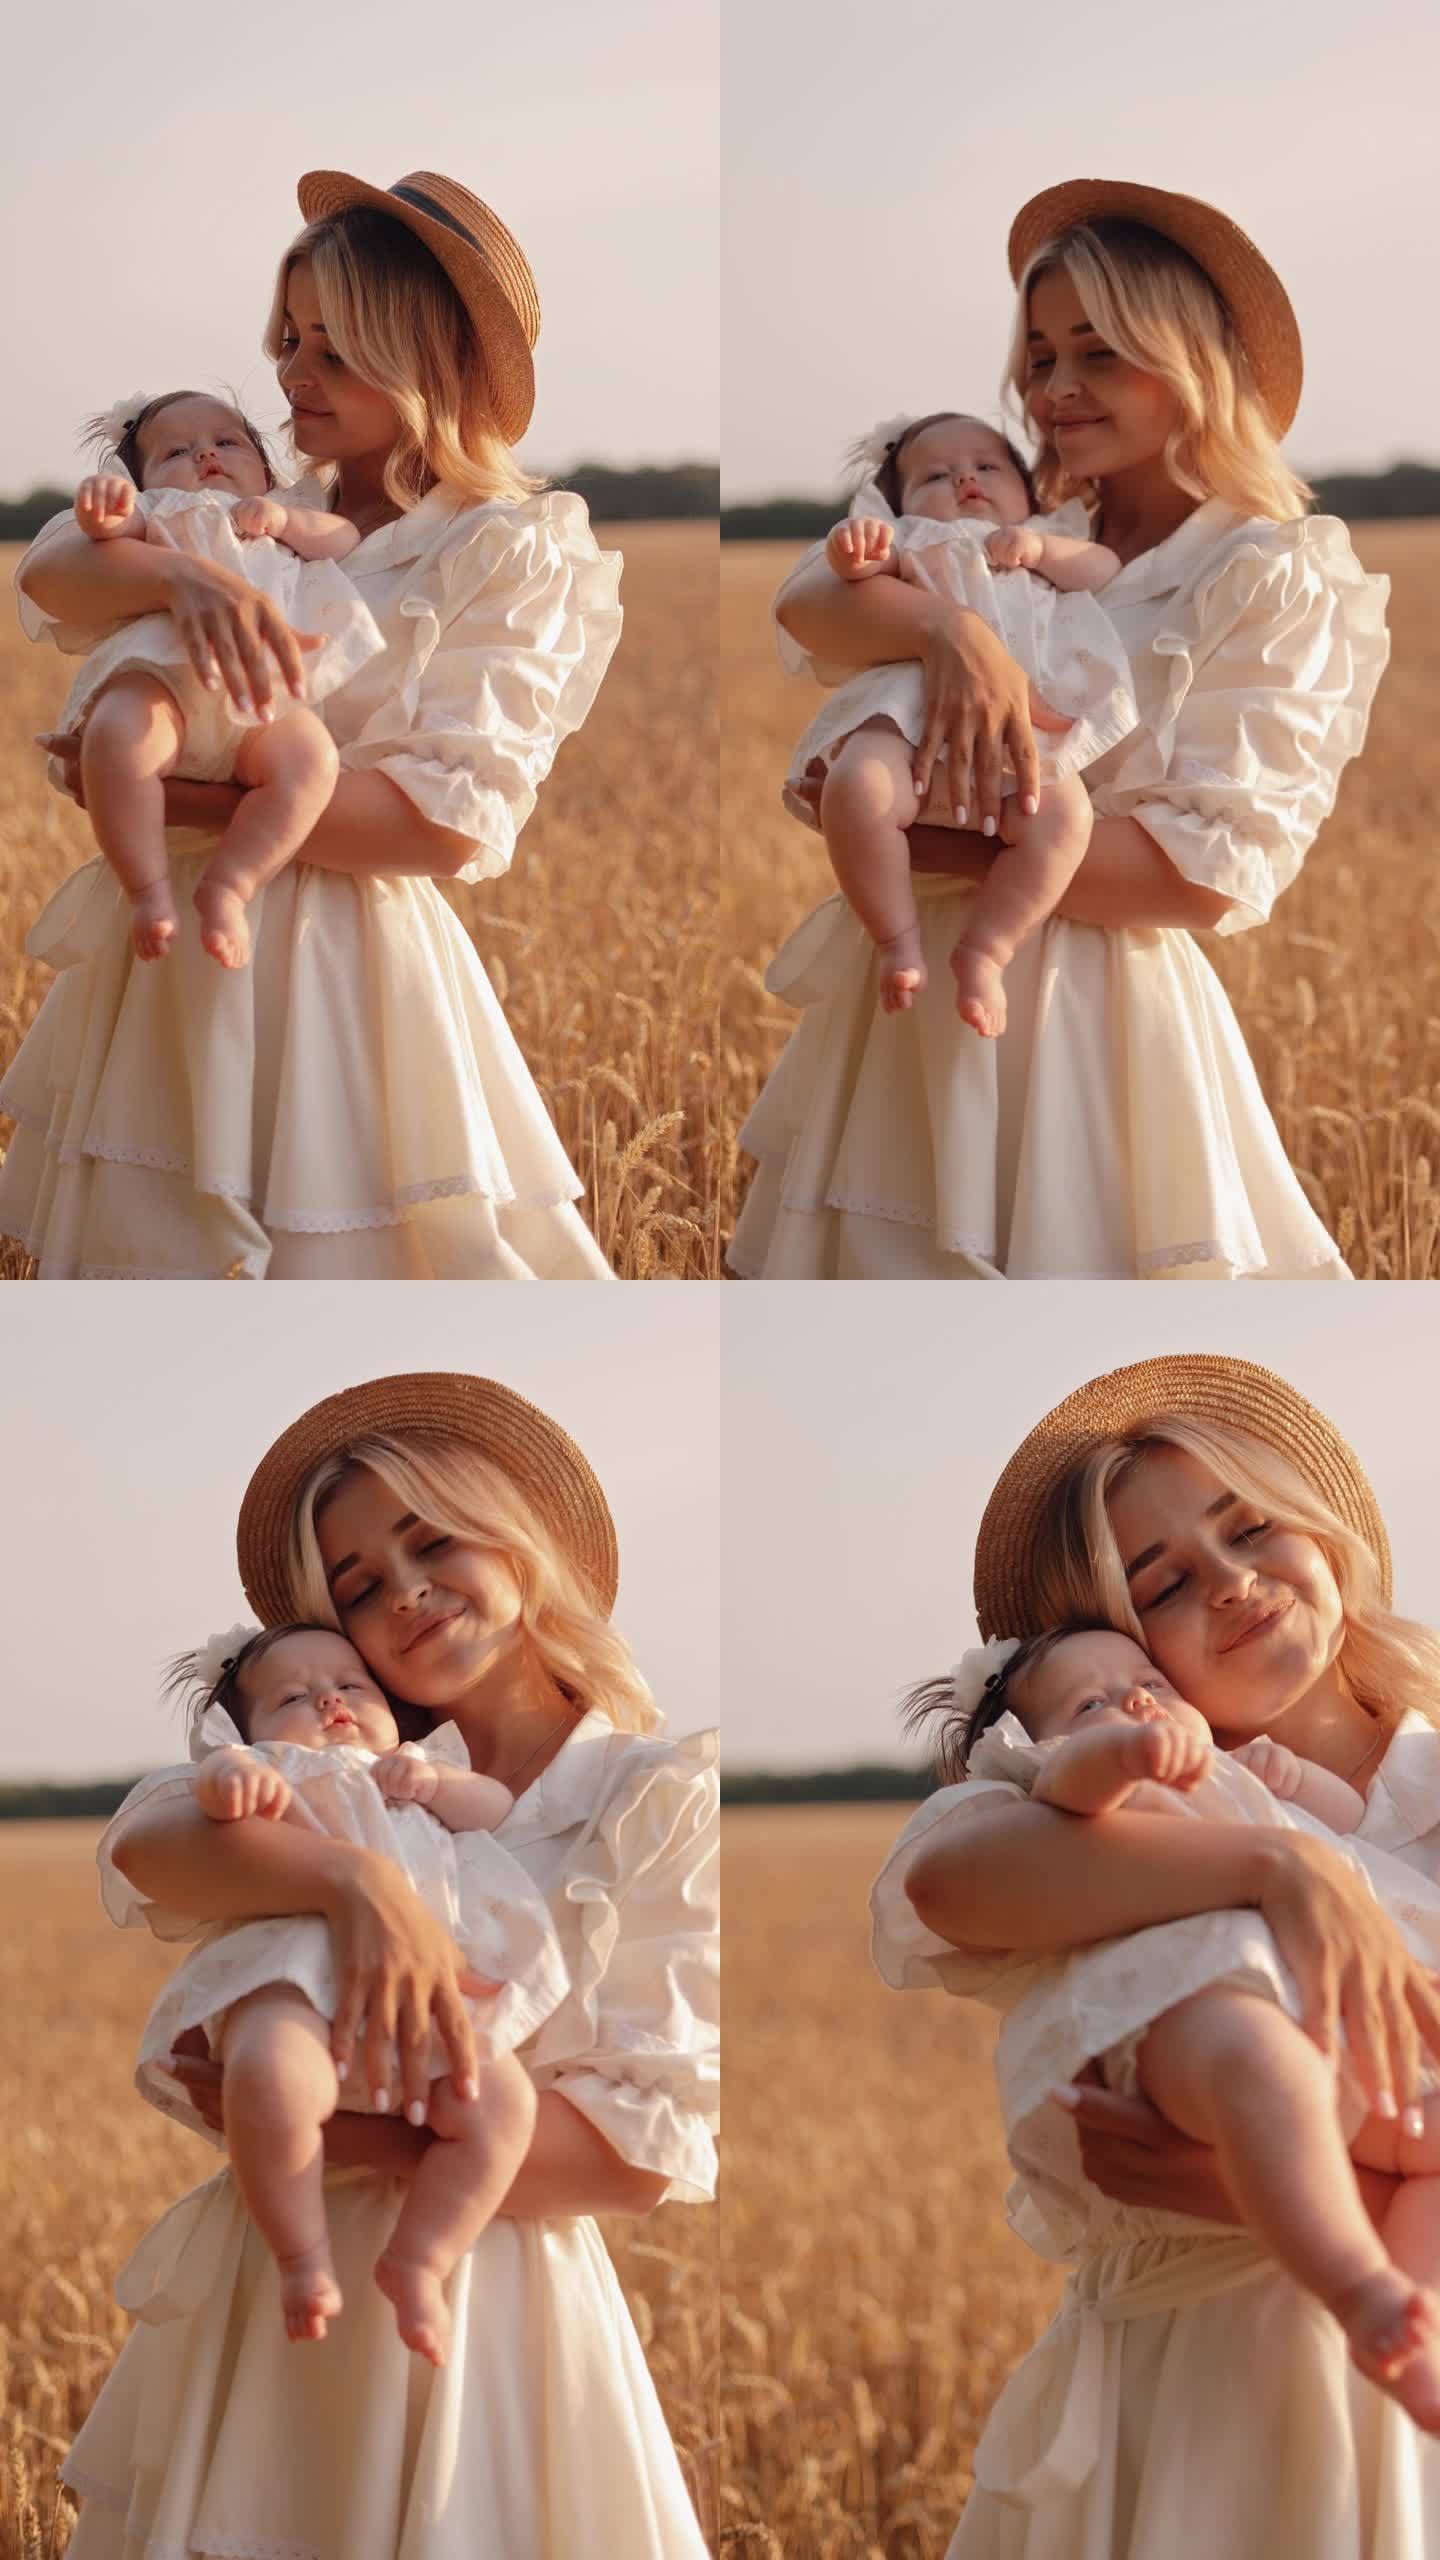 在美丽的夕阳下，一个年轻快乐的白人妇女抱着一个可爱的小女孩。母亲和孩子的剪影。开放领域。农村景观